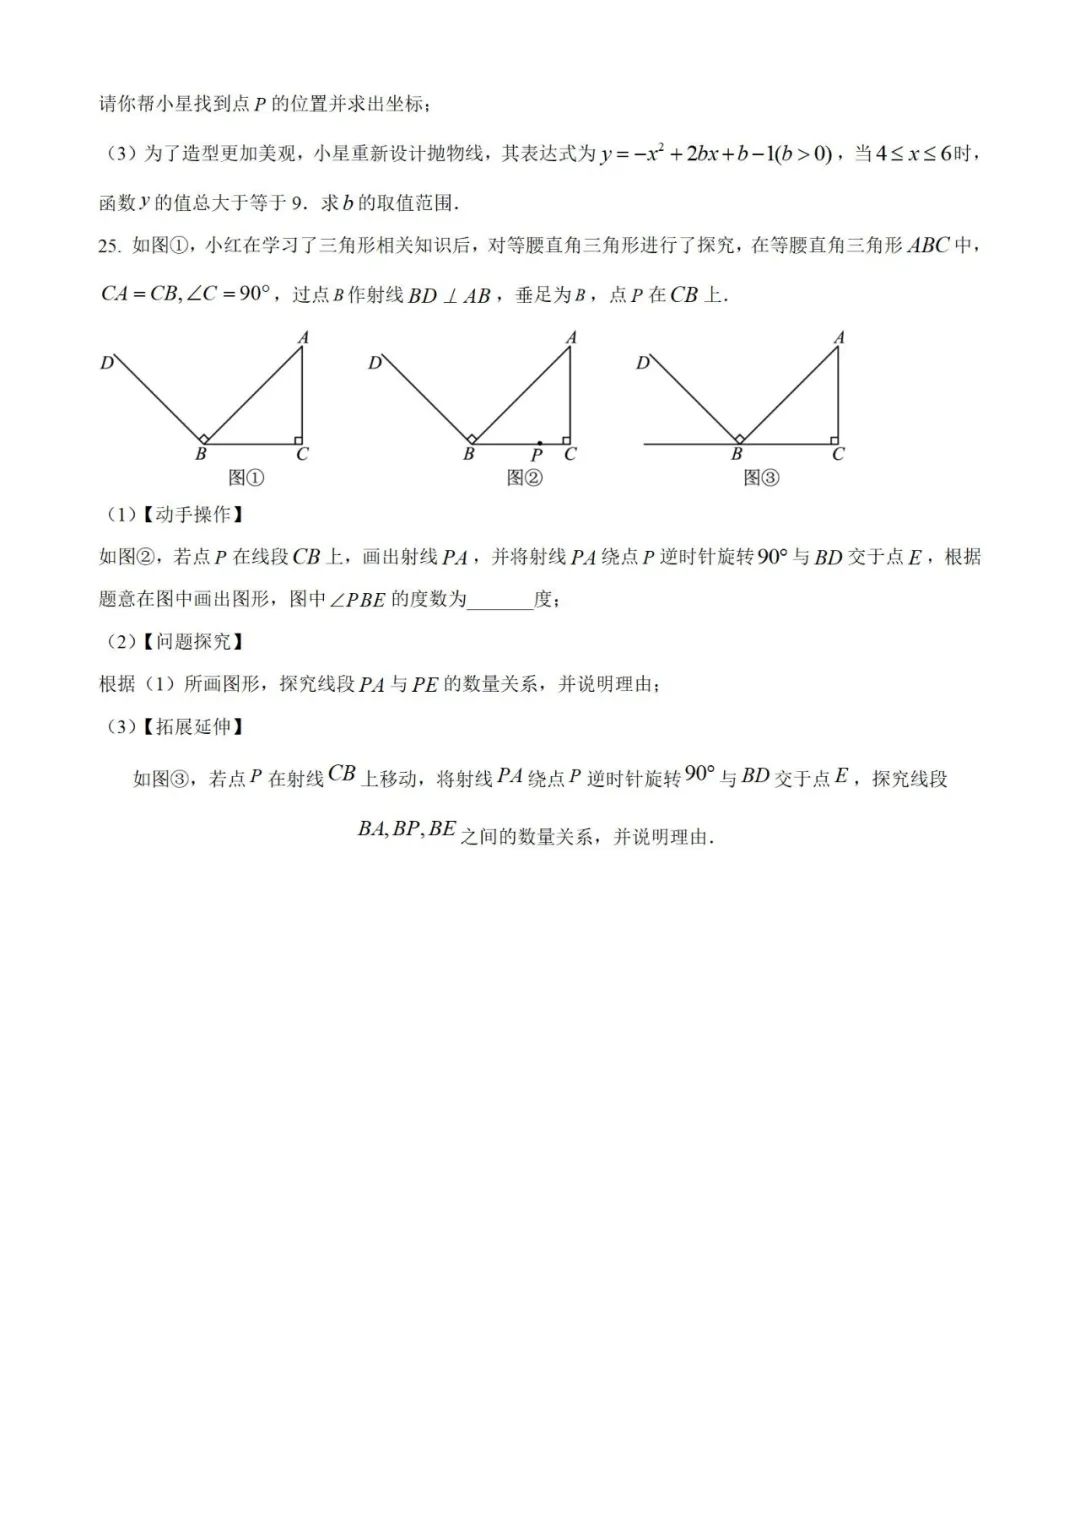 【中考真题】2023年贵州省中考数学真题 (带答案解析) 第8张